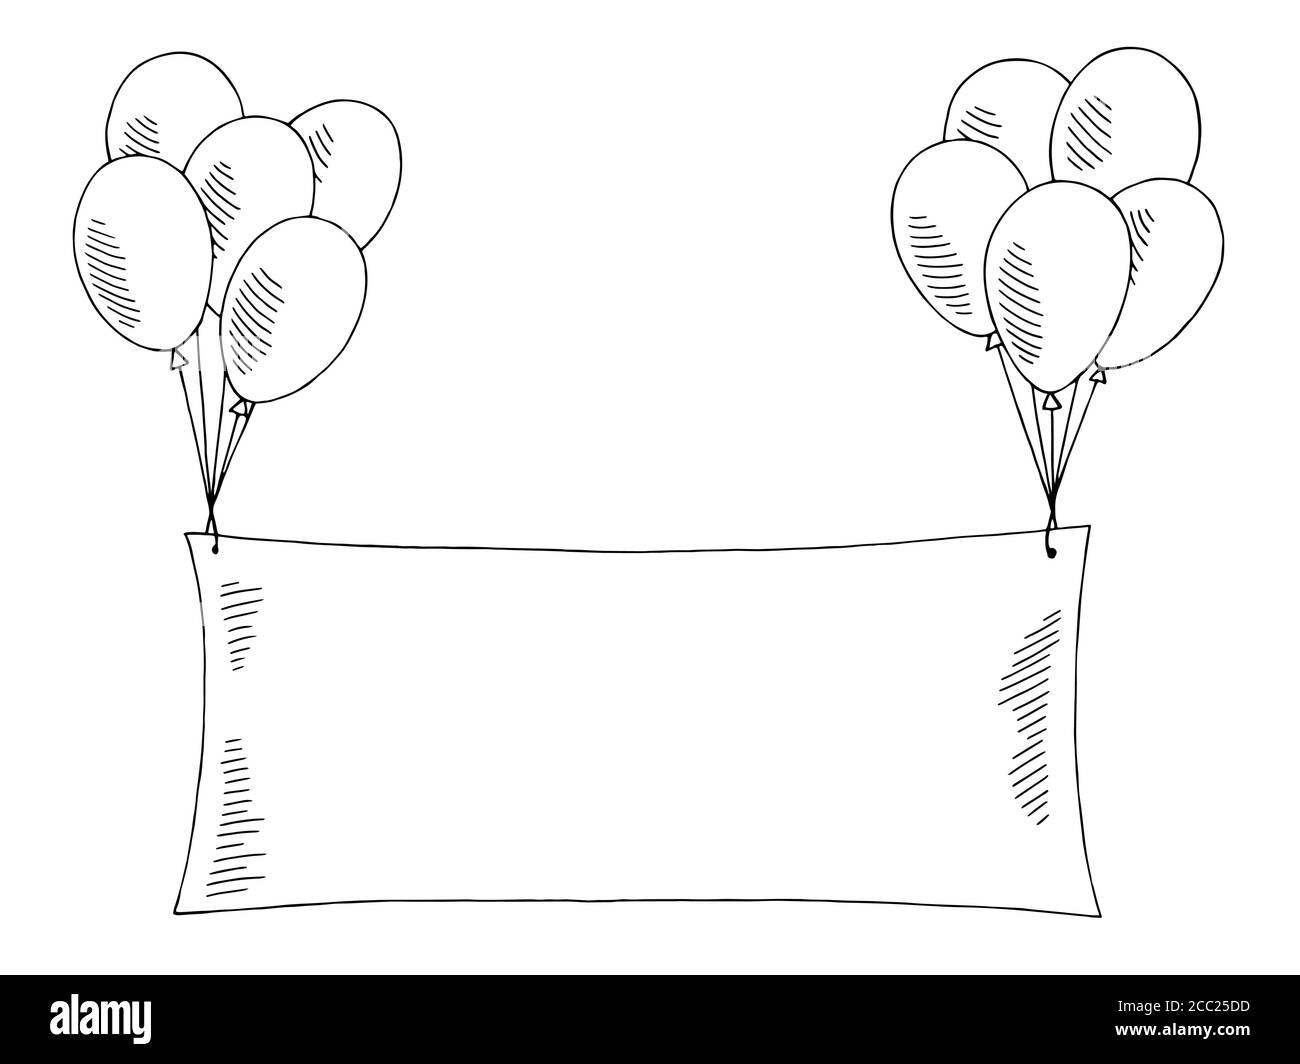 Banner Luftballon Grafik schwarz weiß Skizze Illustration Vektor  Stock-Vektorgrafik - Alamy